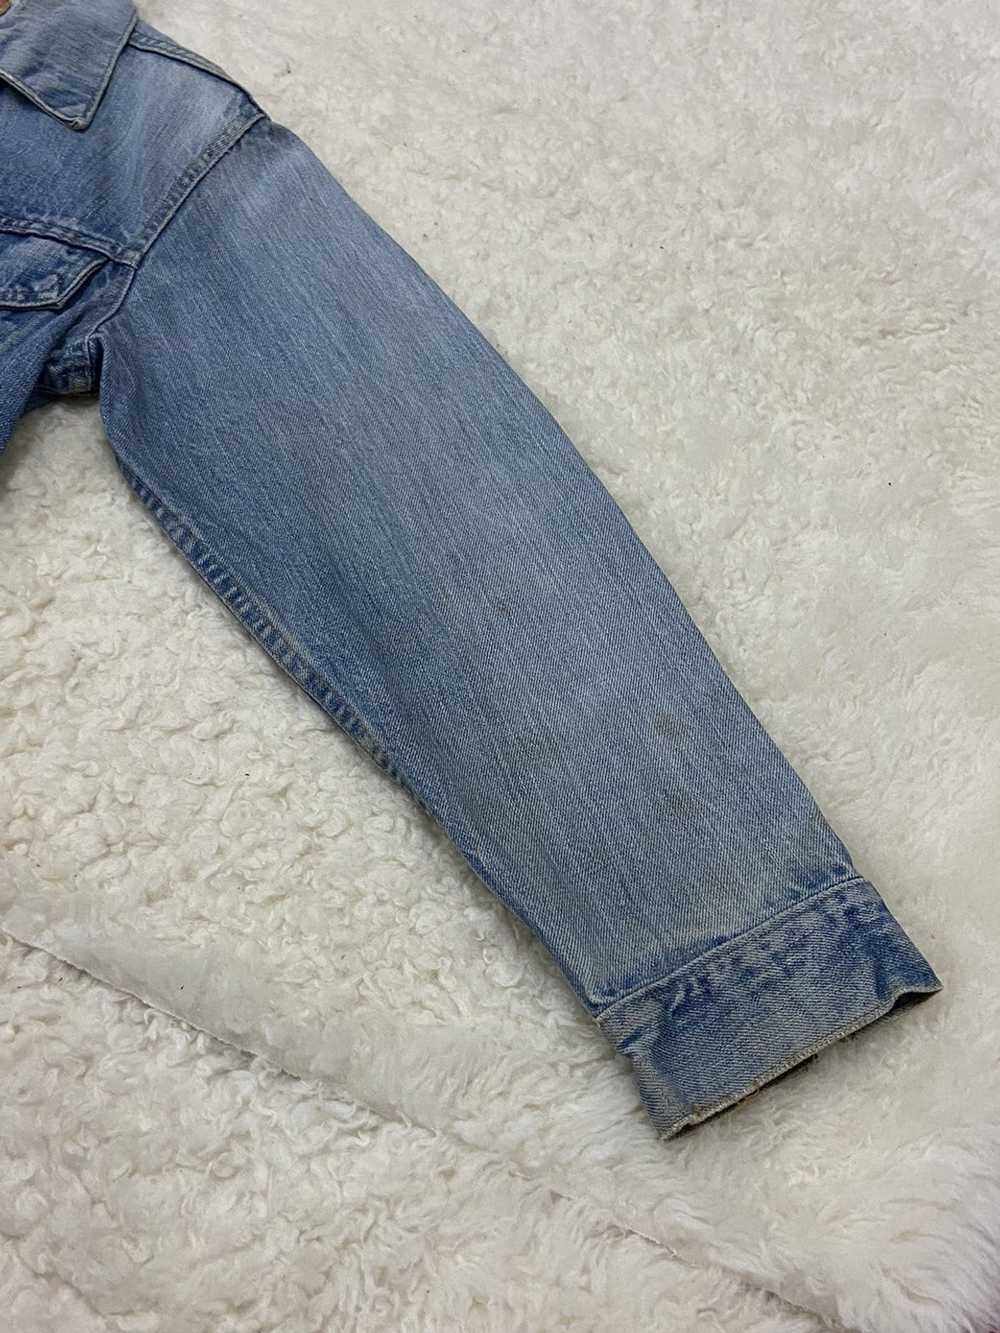 Levi's Vintage Clothing Type III Denim Jacket 705… - image 11